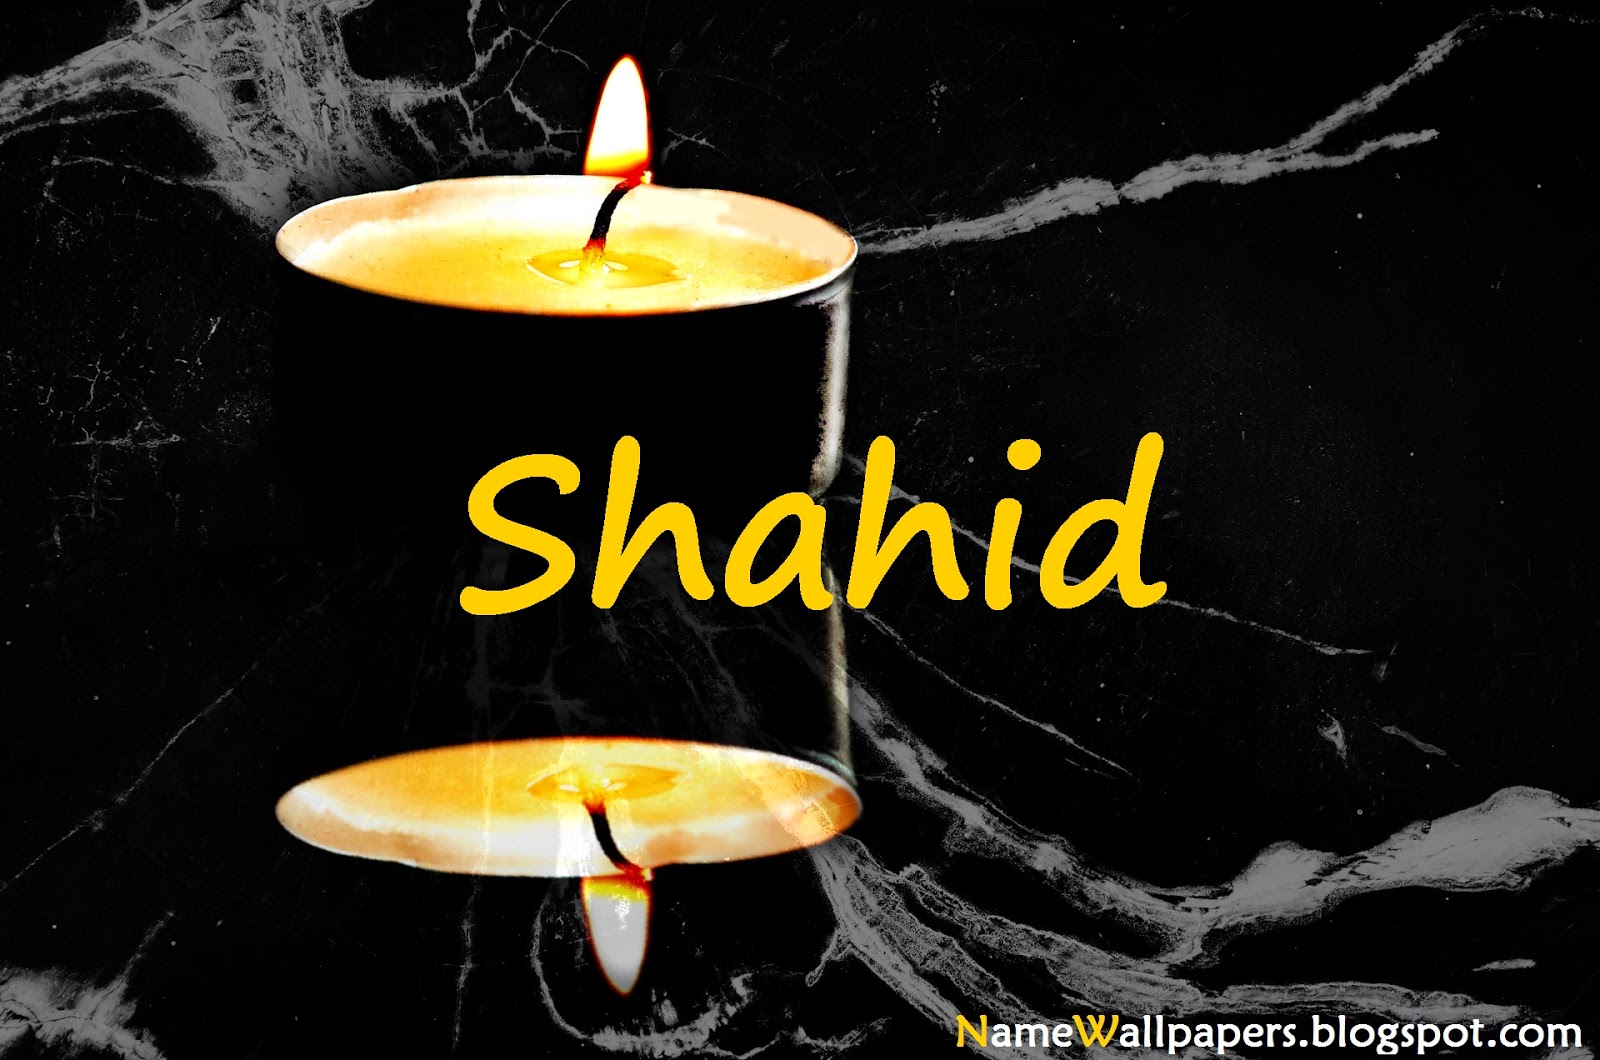 shahid name wallpaper,encendiendo,vela,fotografía de naturaleza muerta,fuente,oscuridad